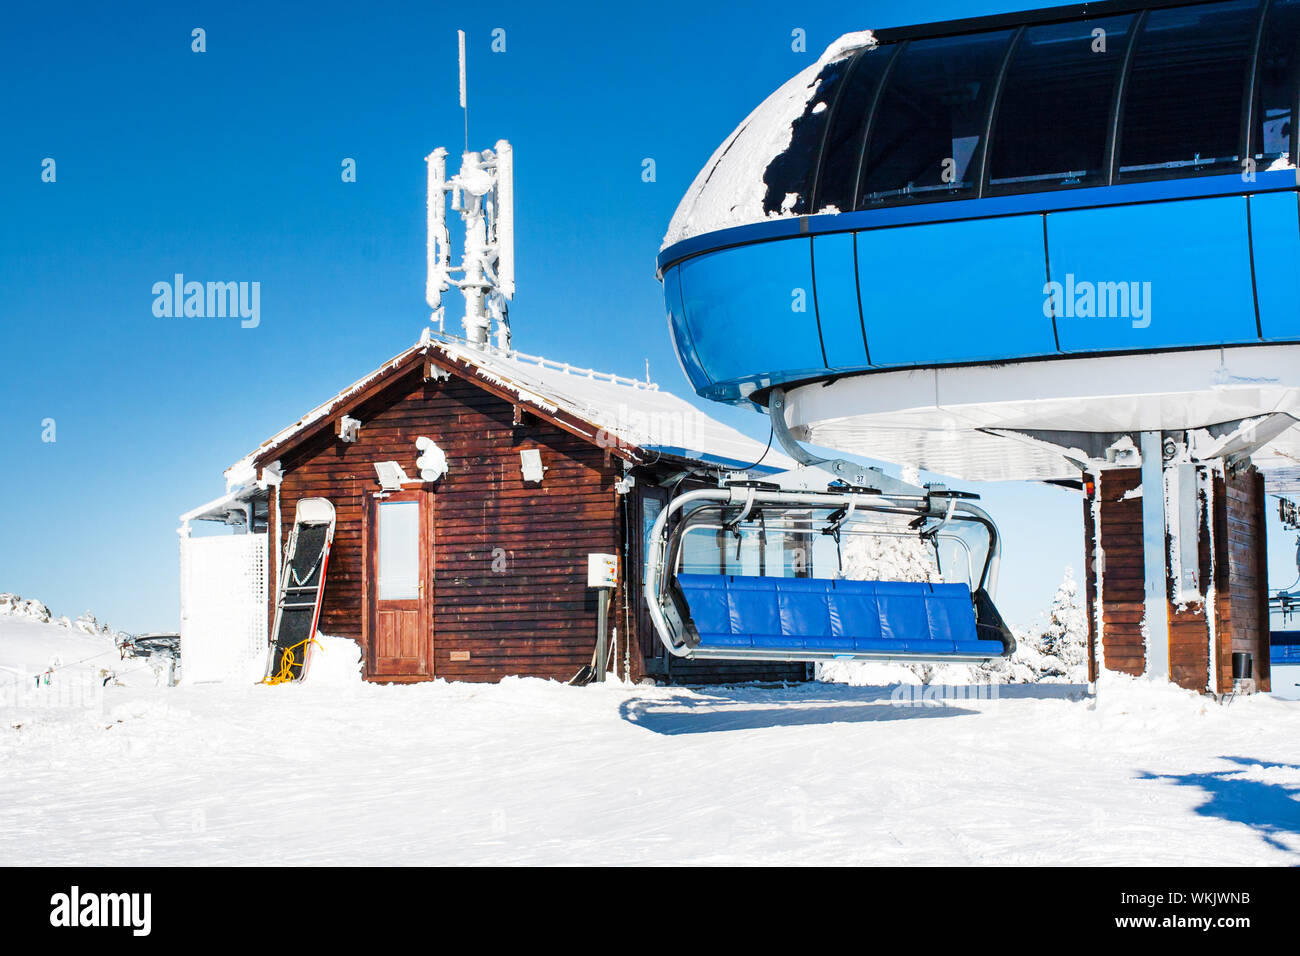 Ski libre avec chaise vide à haute levée, journée ensoleillée d'hiver Banque D'Images